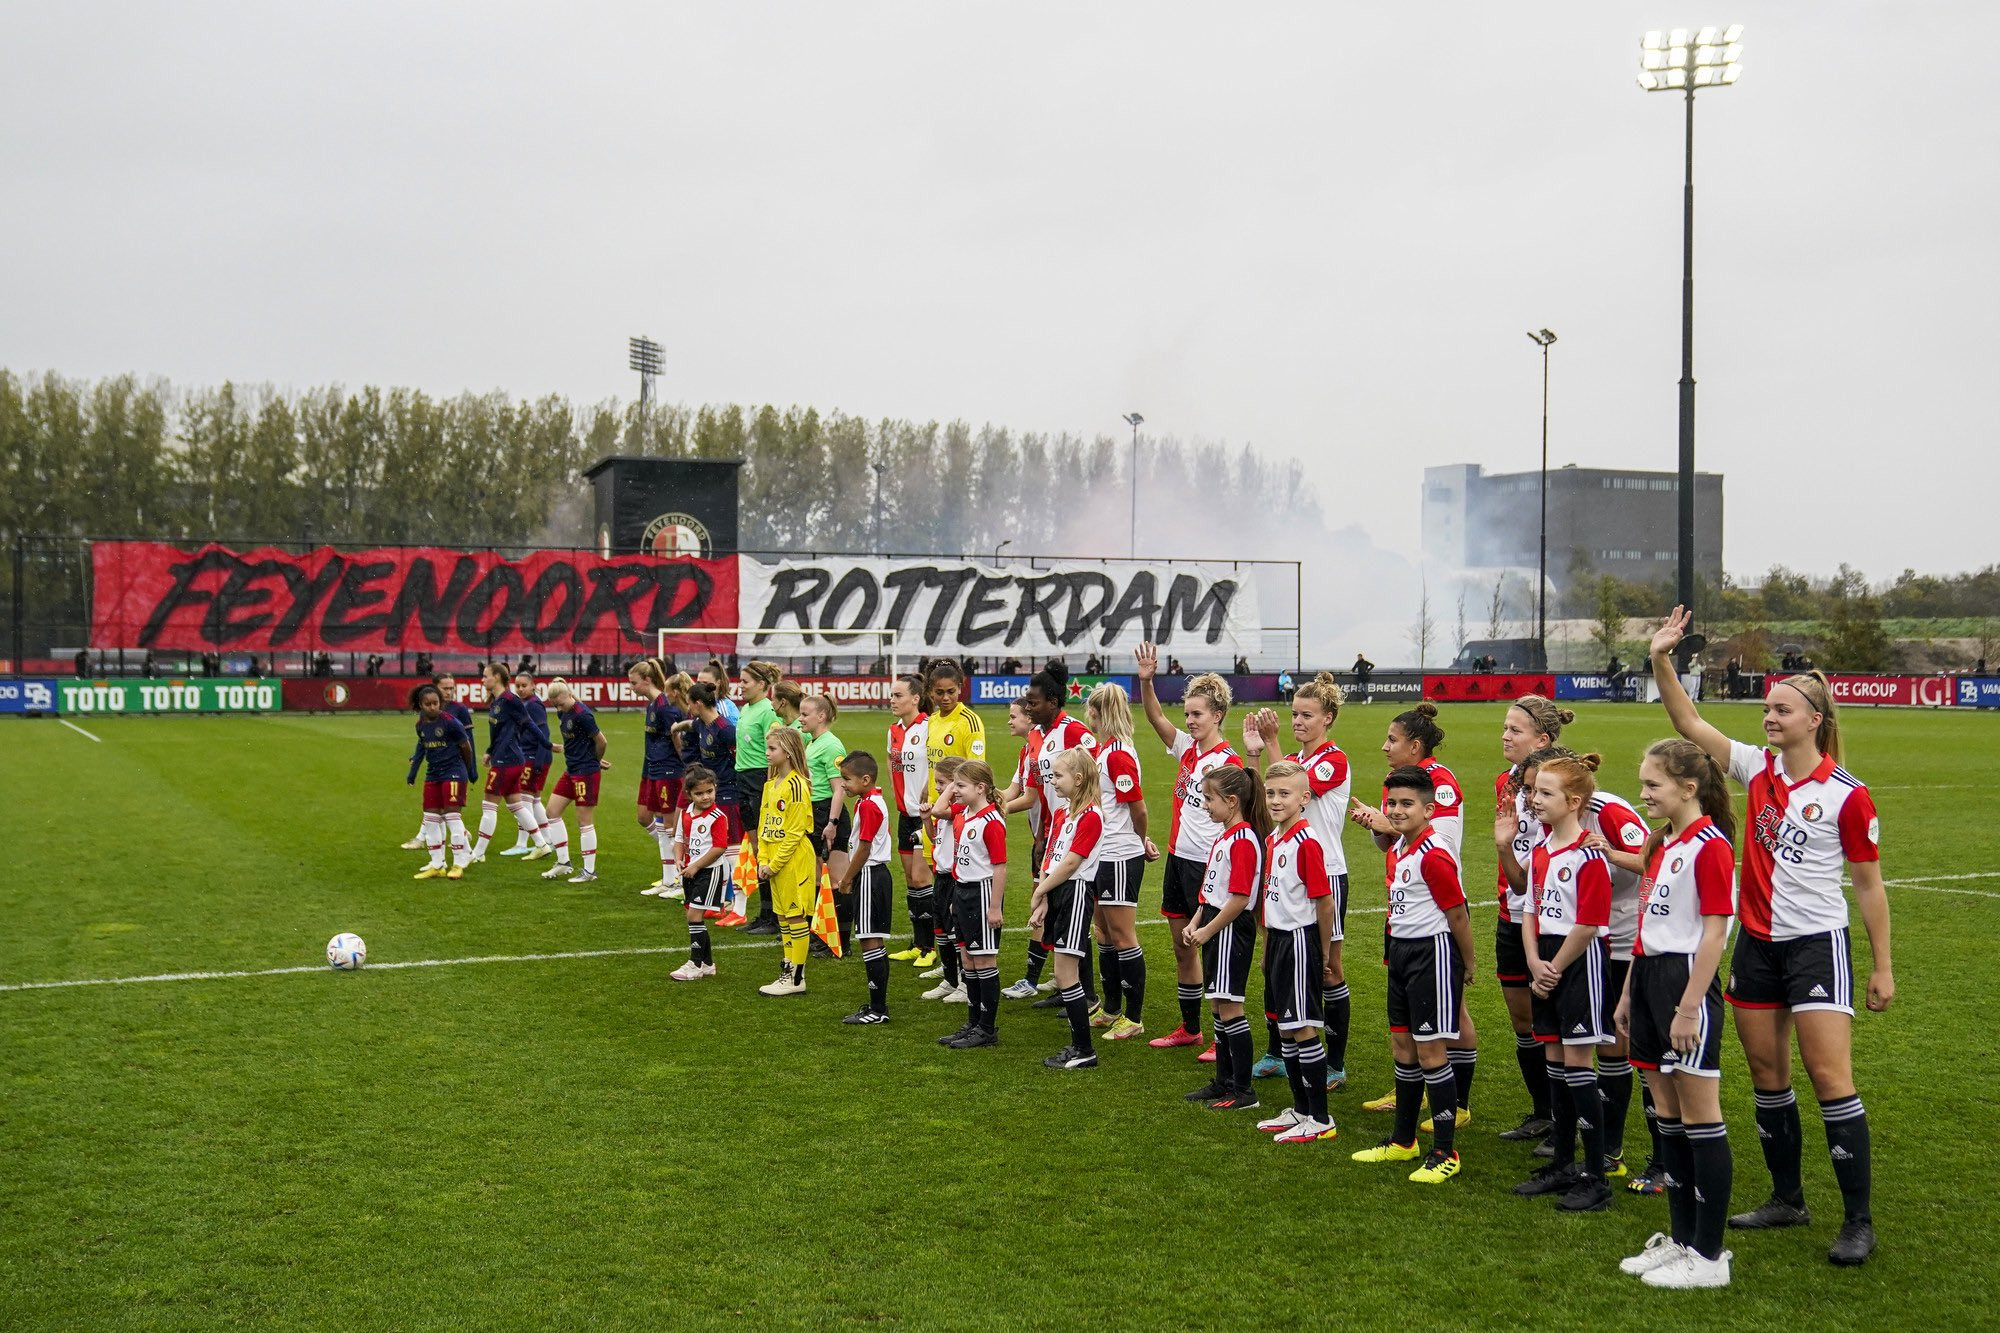 Feyenoord V1: Klassieker in Arena met nieuw toeschouwersrecord, het vrouwenvoetbal groeit door.